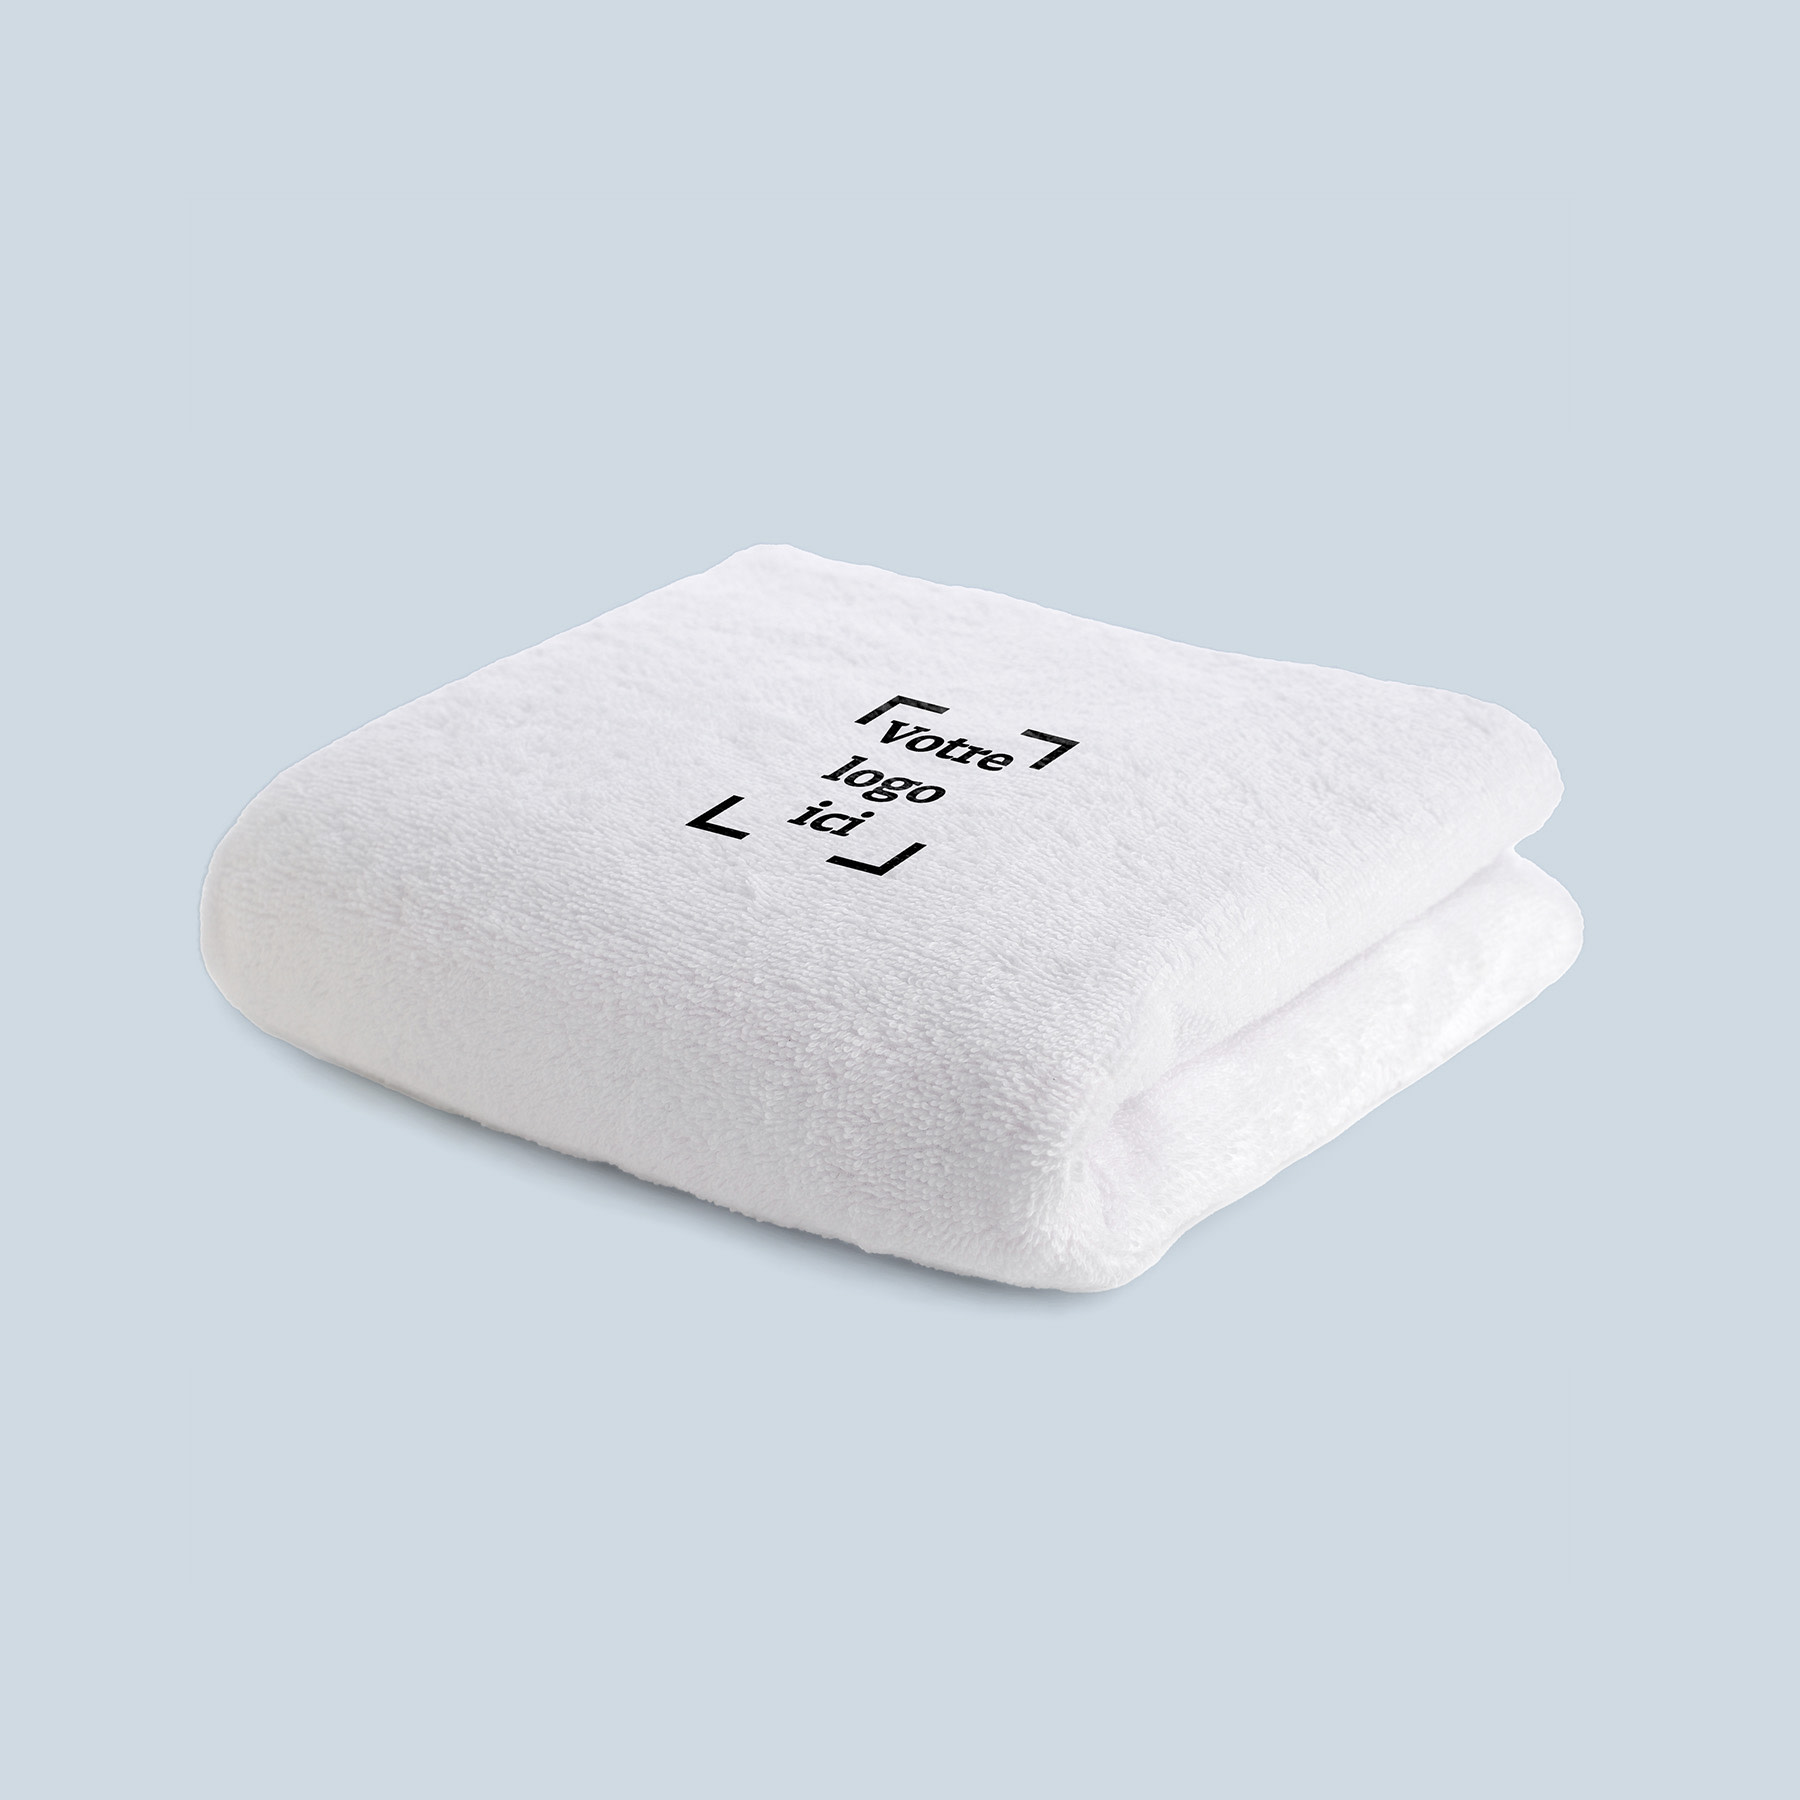 productbeelden je-merk-binnen-handbereik handdoek FR